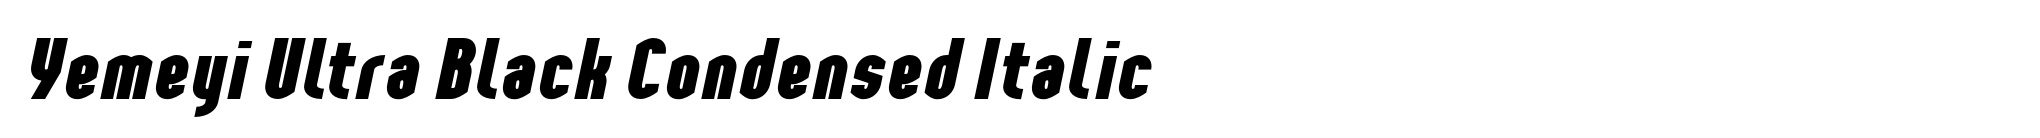 Yemeyi Ultra Black Condensed Italic image